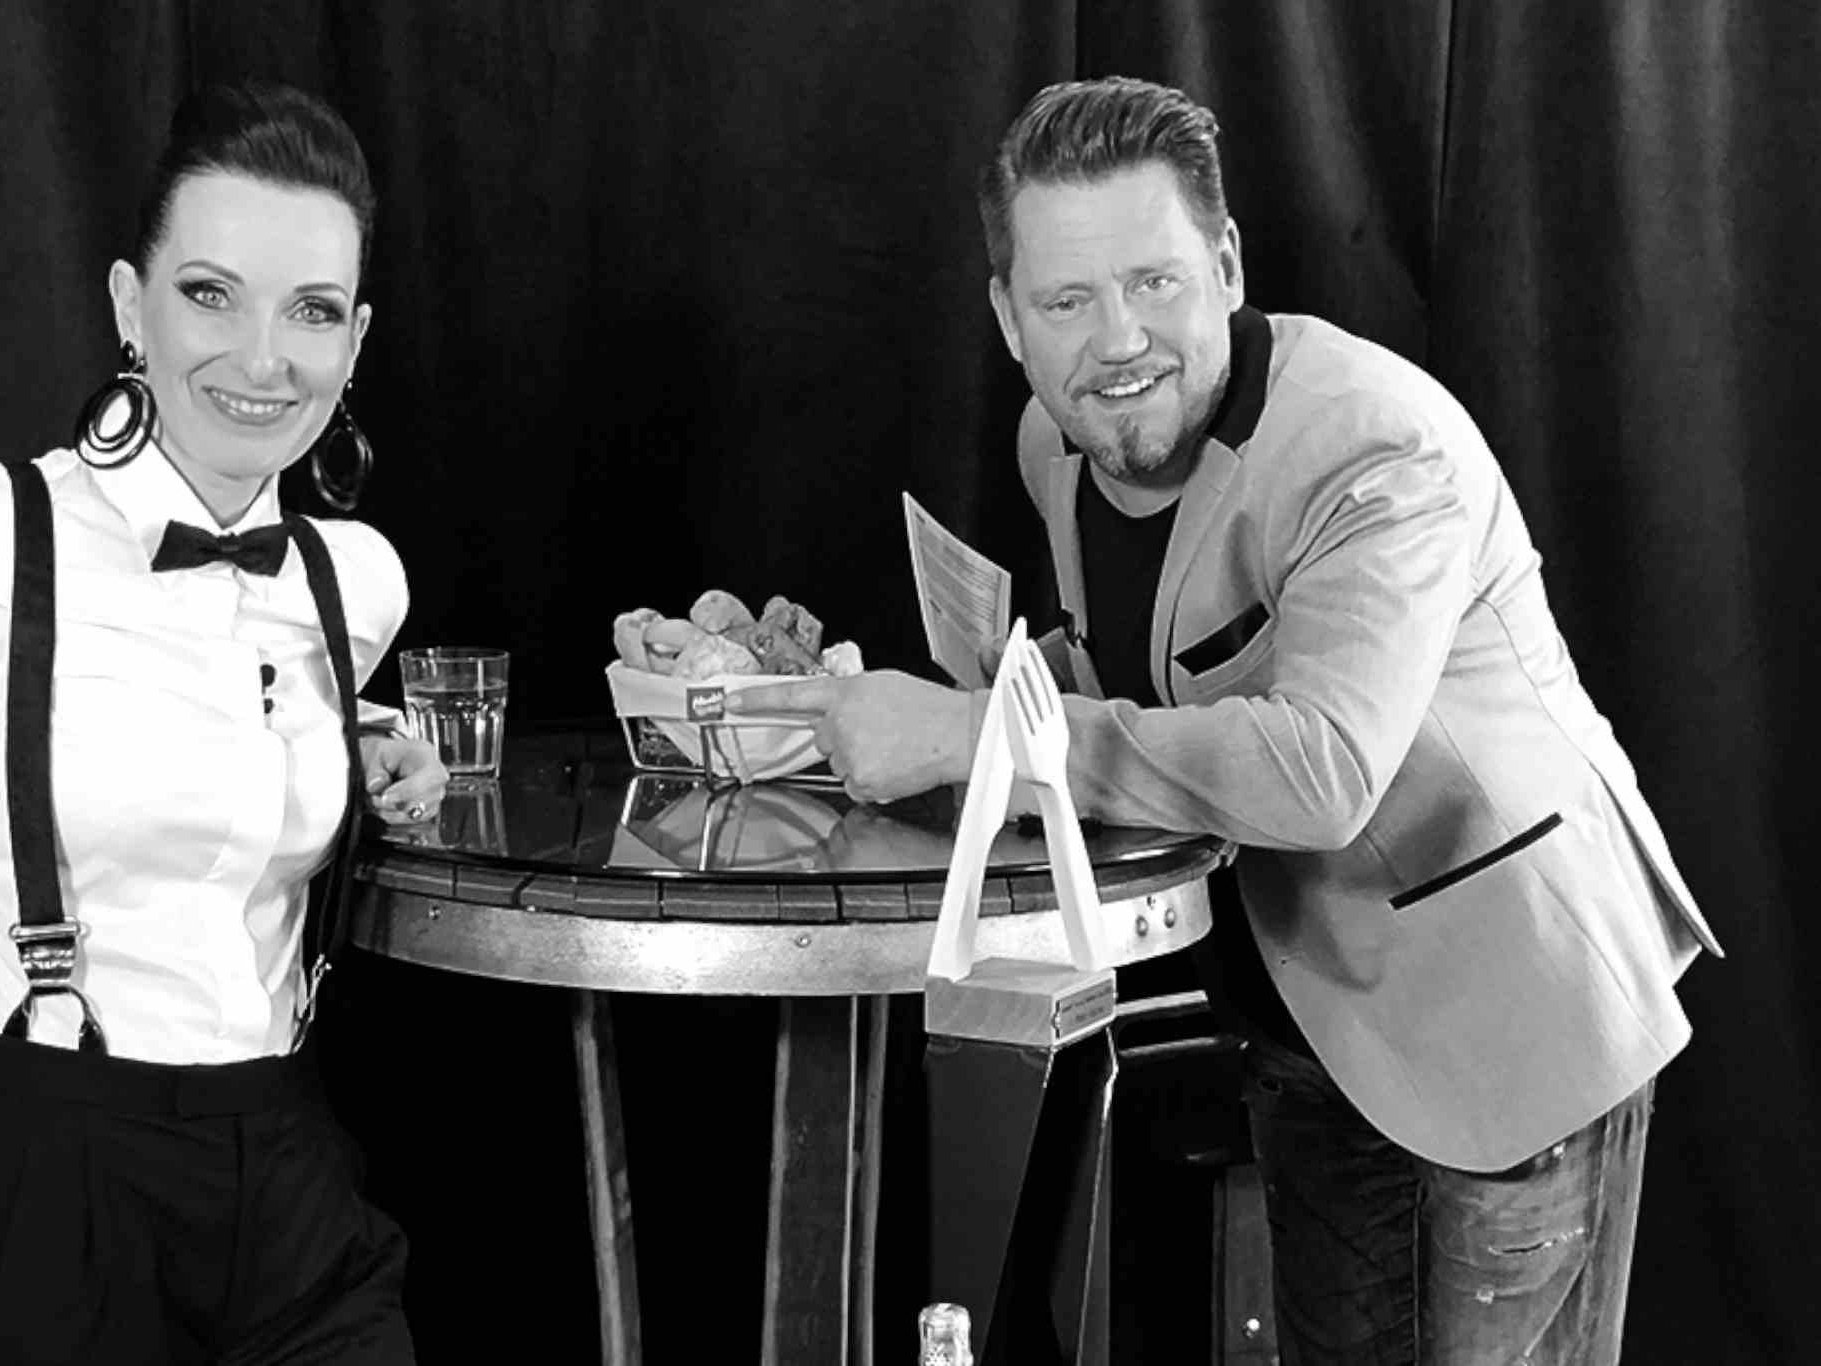 PROFI-Herausgeberin Alexandra Gorsche und TV-Star Mike Süsser moderierten das Event.